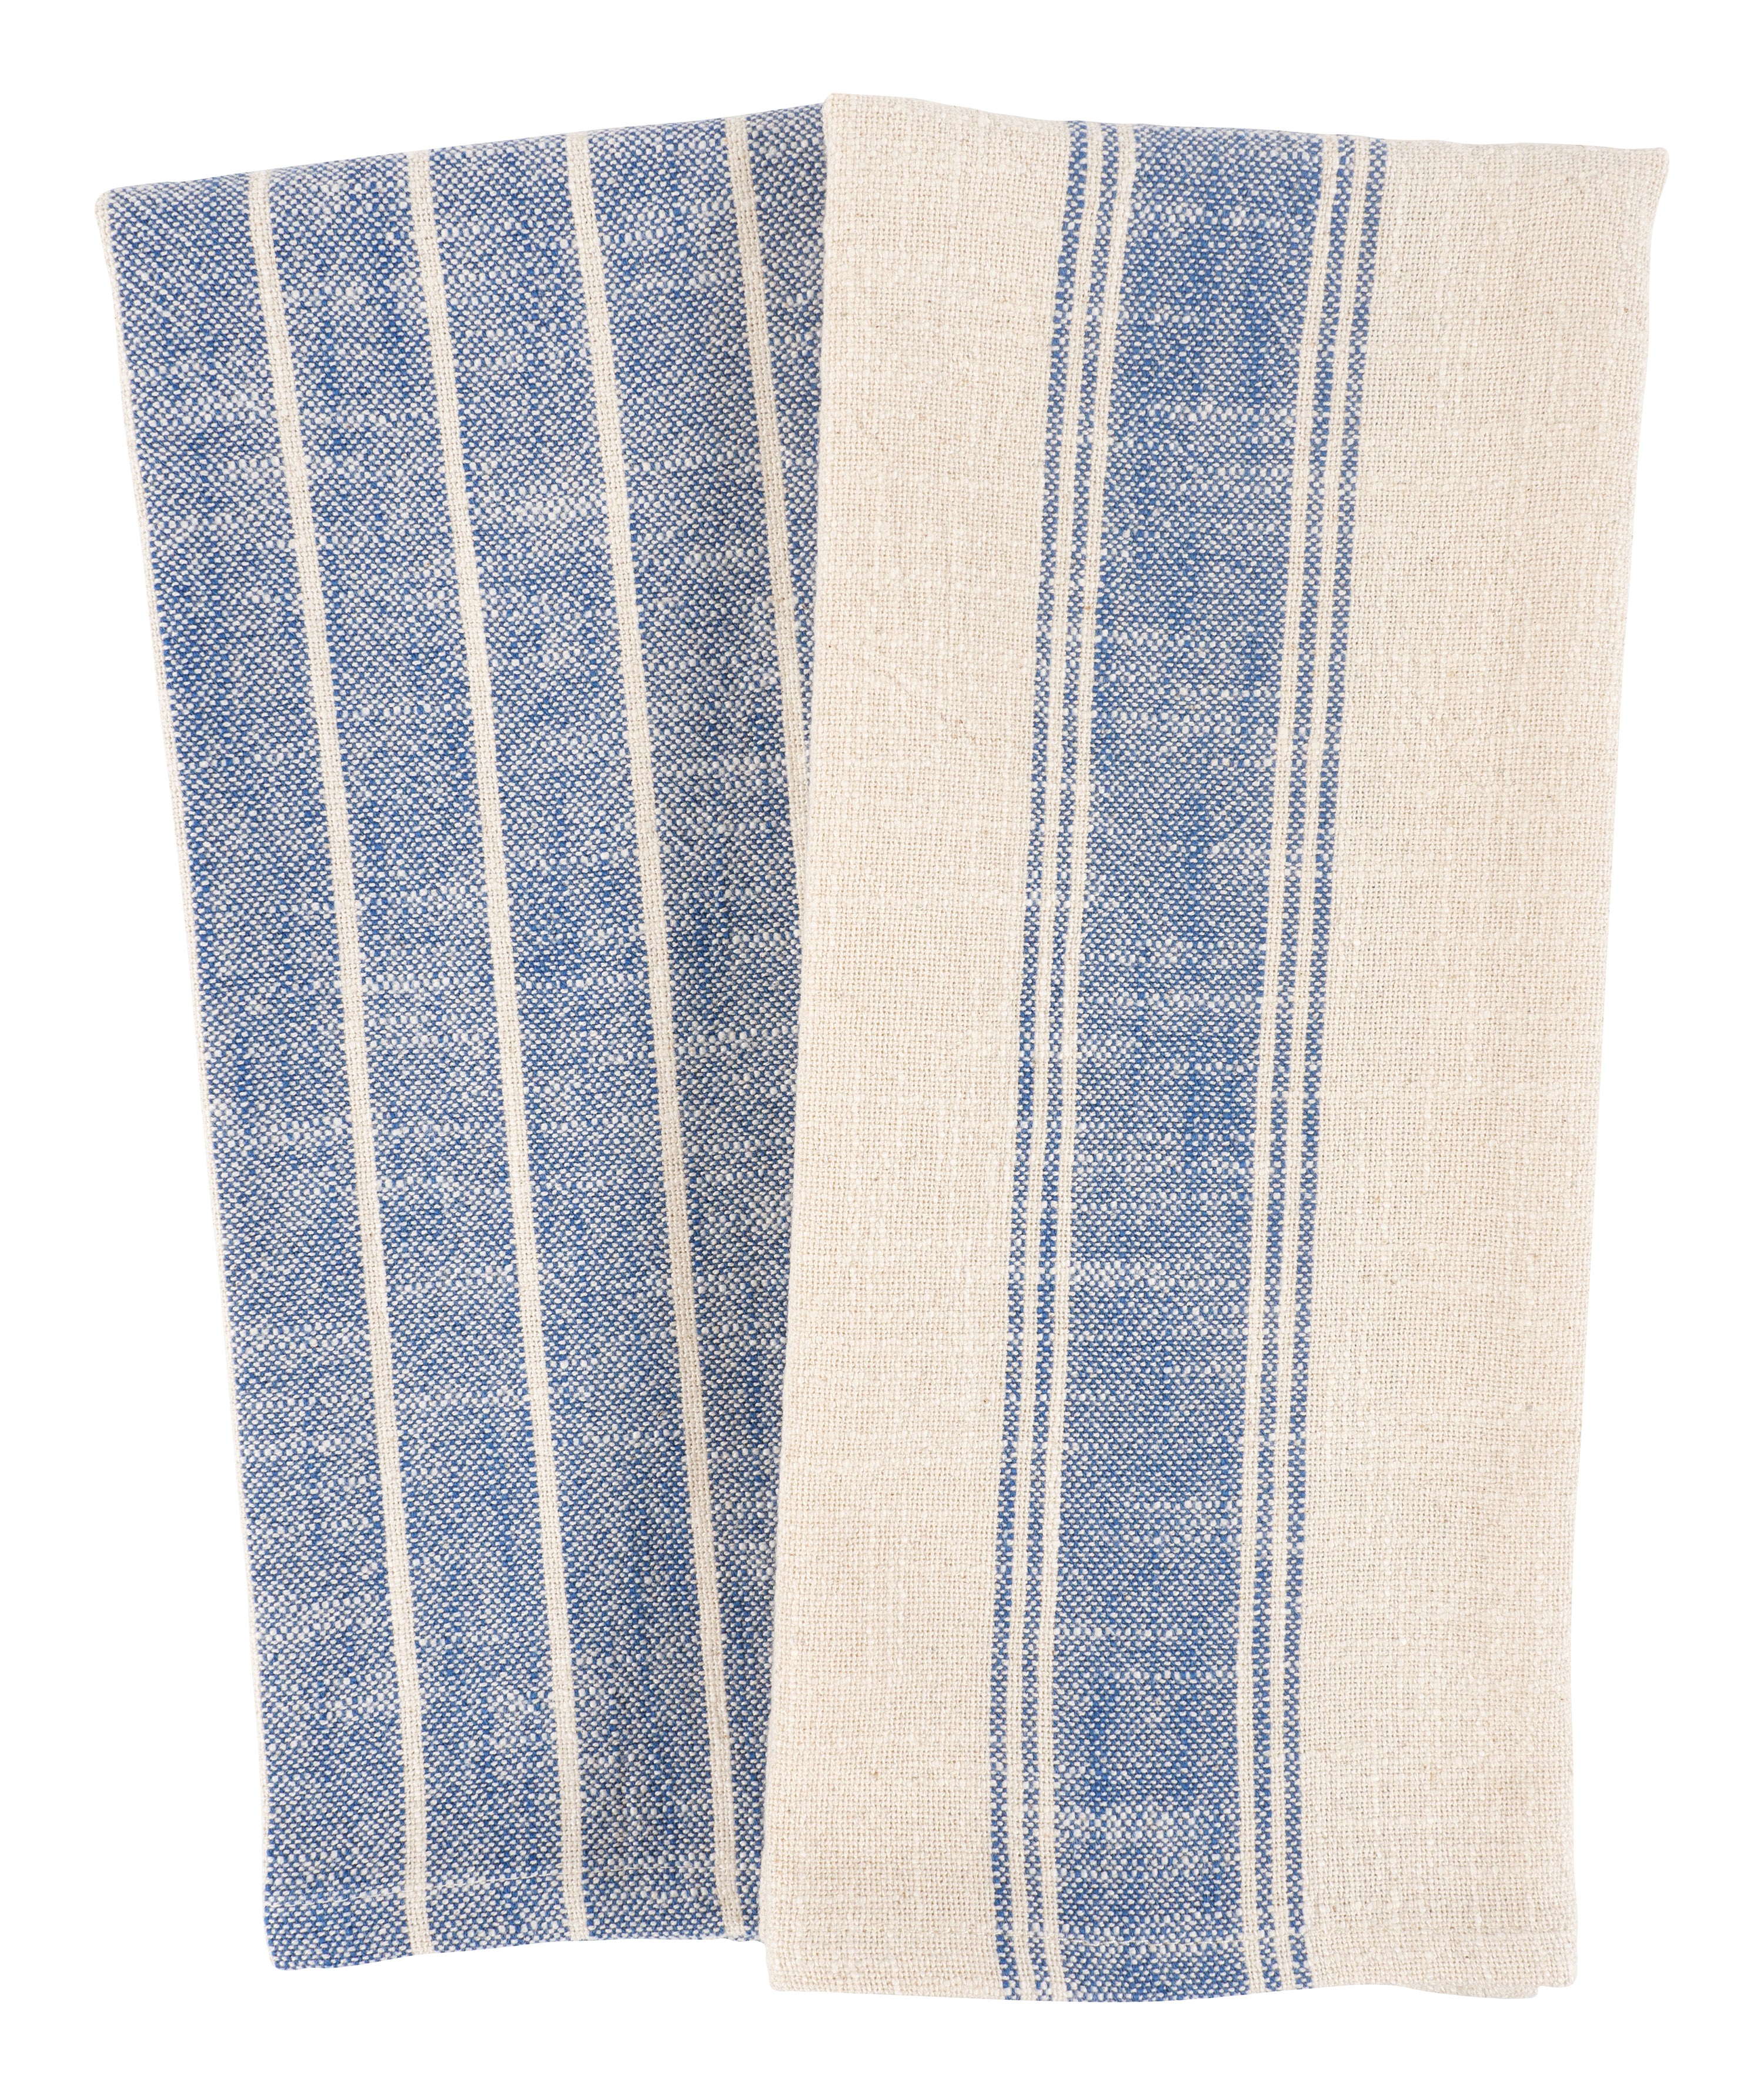 Kitchen Towels Cotton, Set of 6, Plaid Dish Towels, Farmhouse